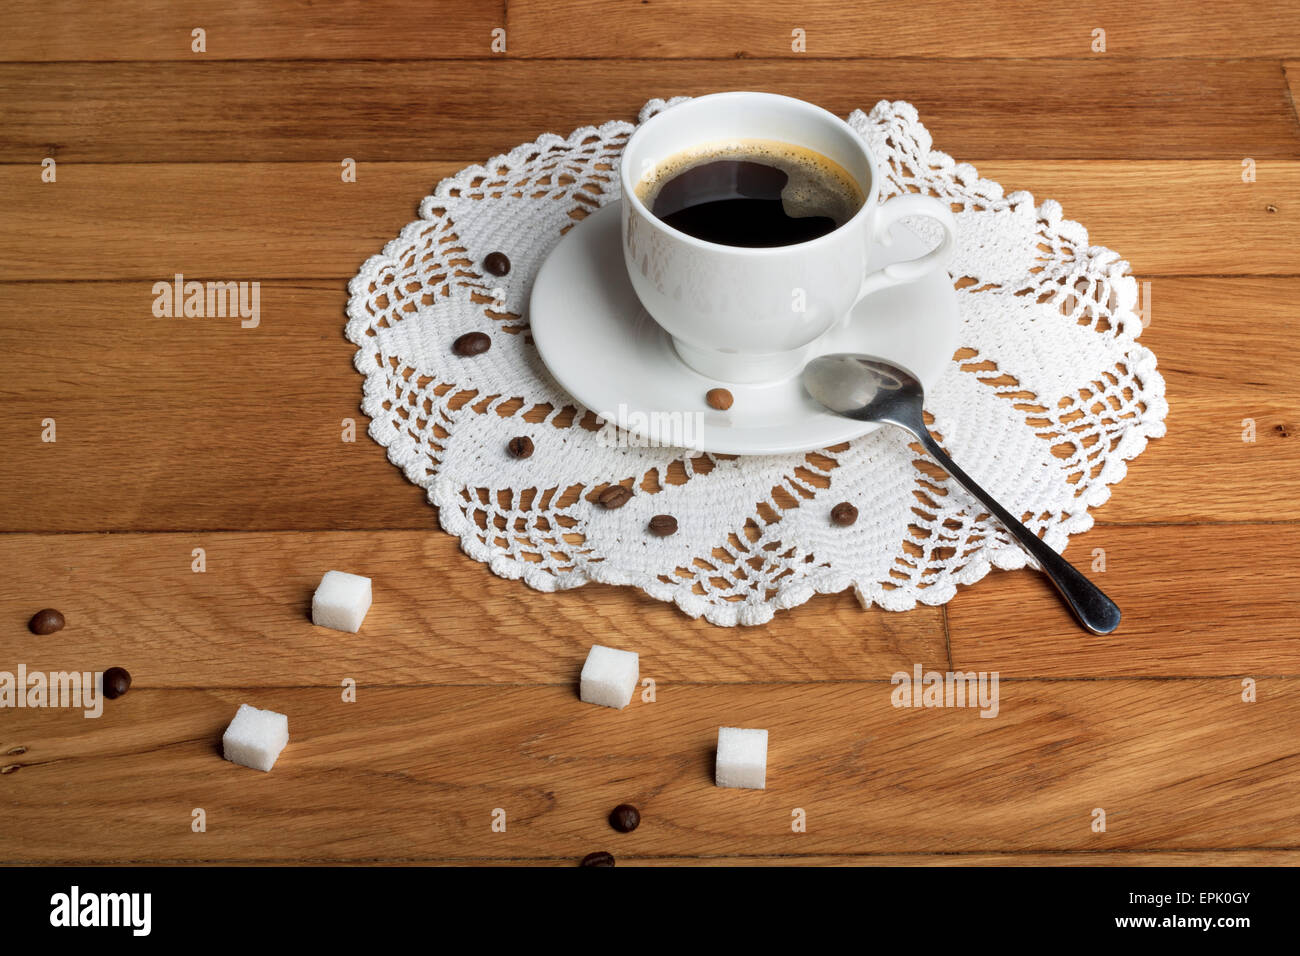 Du café chaud dans une tasse blanche avec du sucre sur la table en bois Banque D'Images